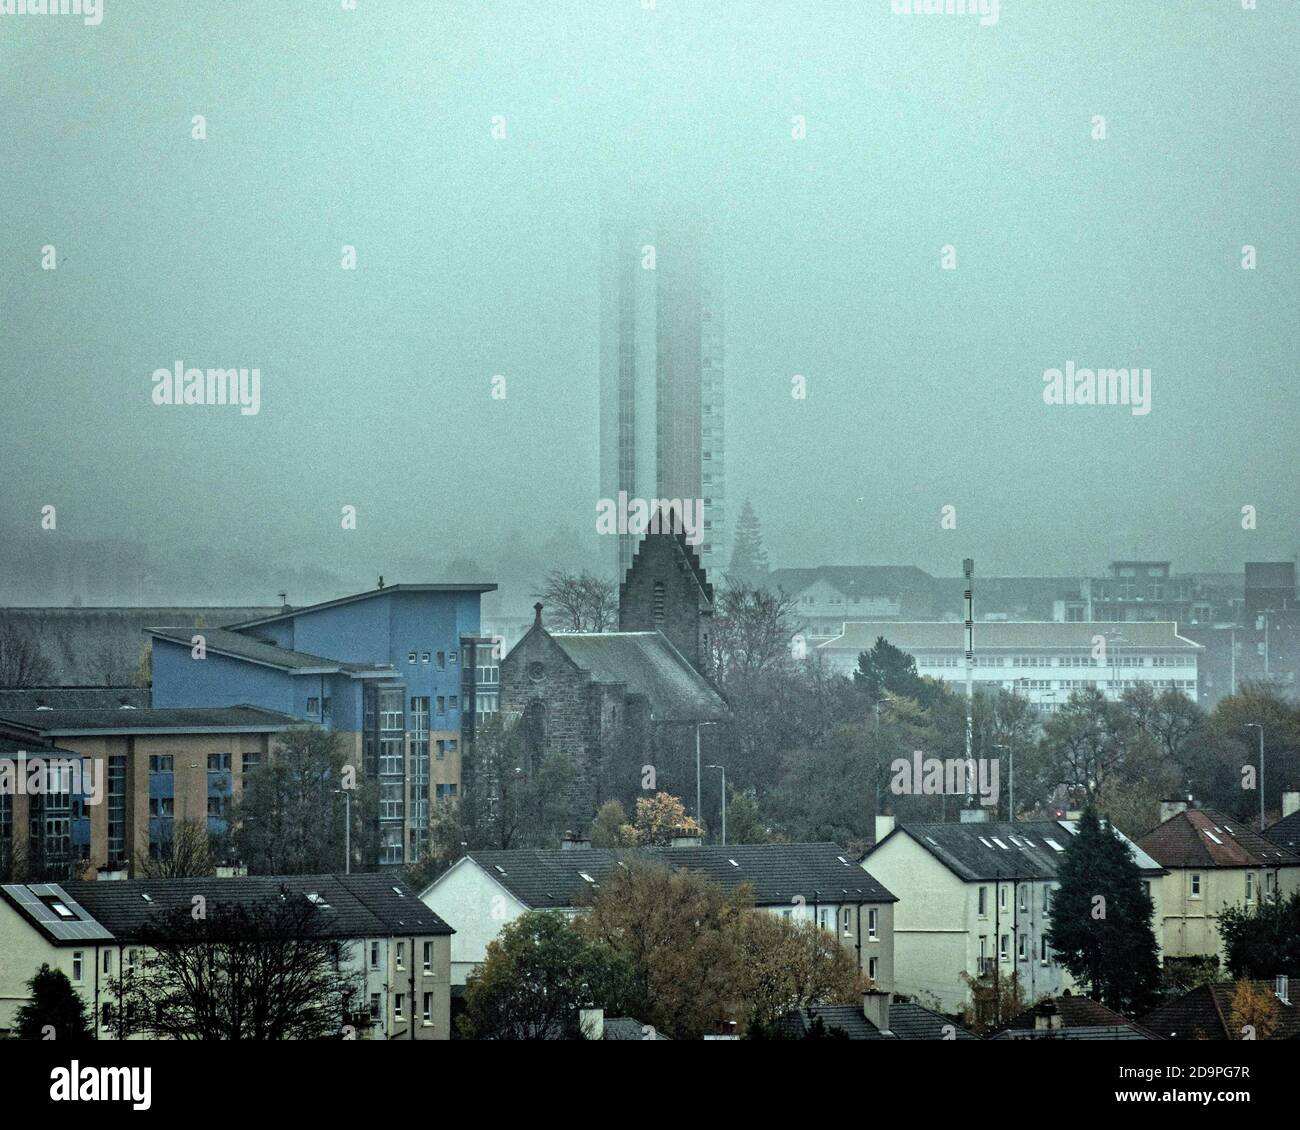 Glasgow, Schottland, Großbritannien. 7. November 2020: UK Wetter: Nebel gibt nur begrenzte Sicht über die Stadt, da sie hinter einem teilweise überdachten anniesland-Hofturm verschwindet, dem höchsten denkmalgeschützten Gebäude Schottlands. Quelle: Gerard Ferry/Alamy Live News Stockfoto